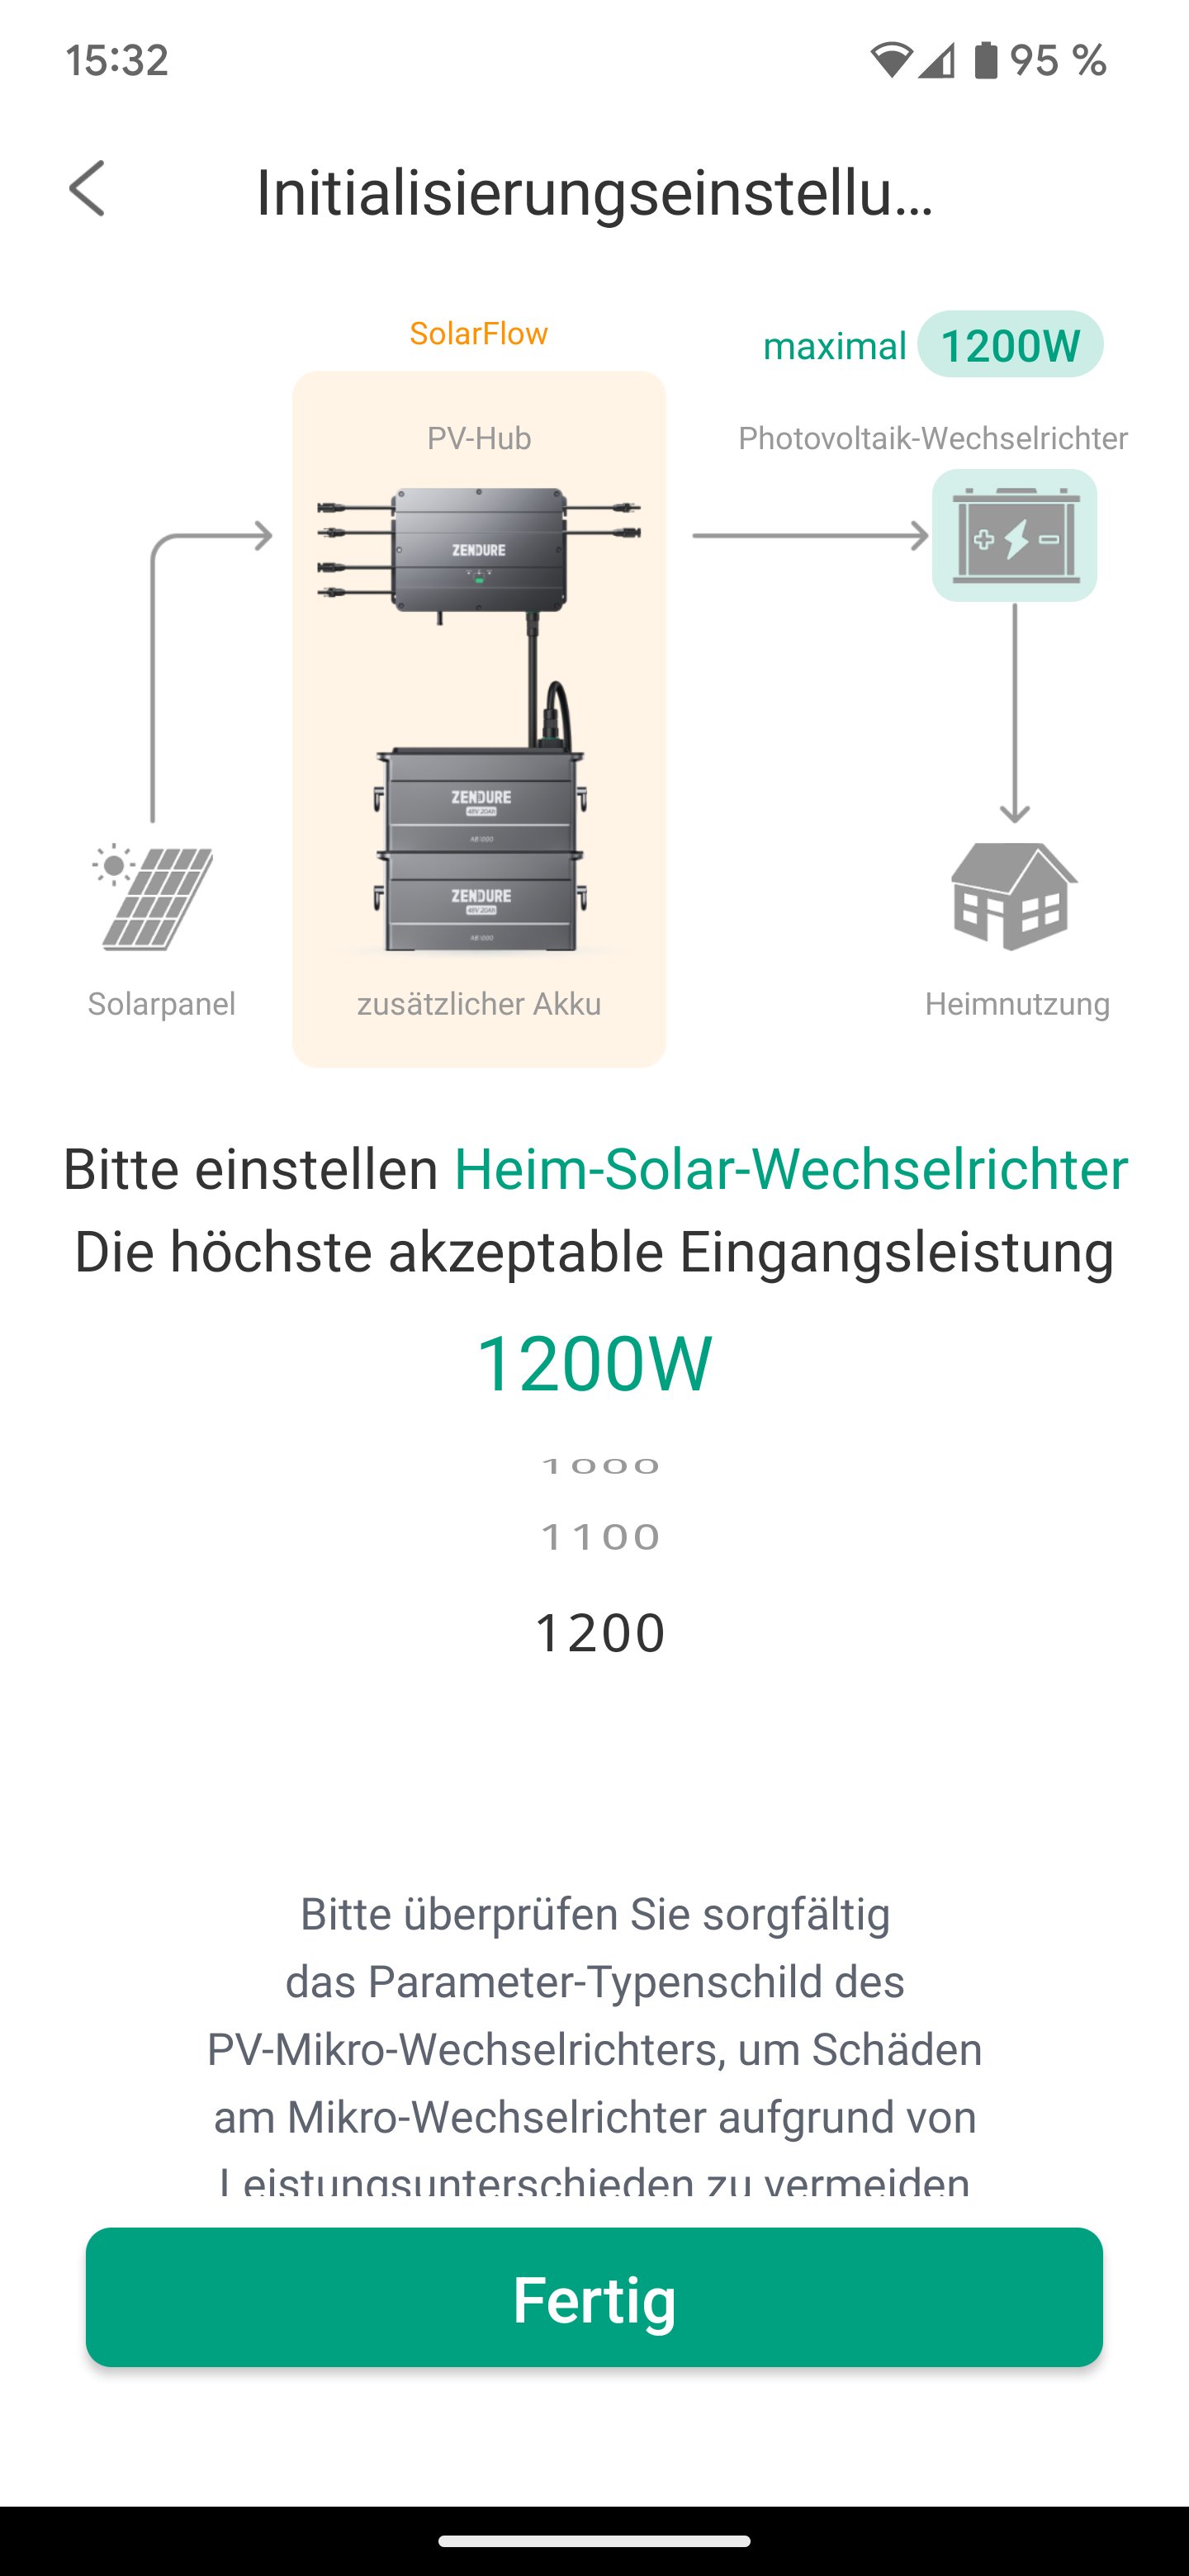 Zendure SolarFlow im Test: Unsere Erfahrungen mit dem  Balkonkraftwerk-Speicher